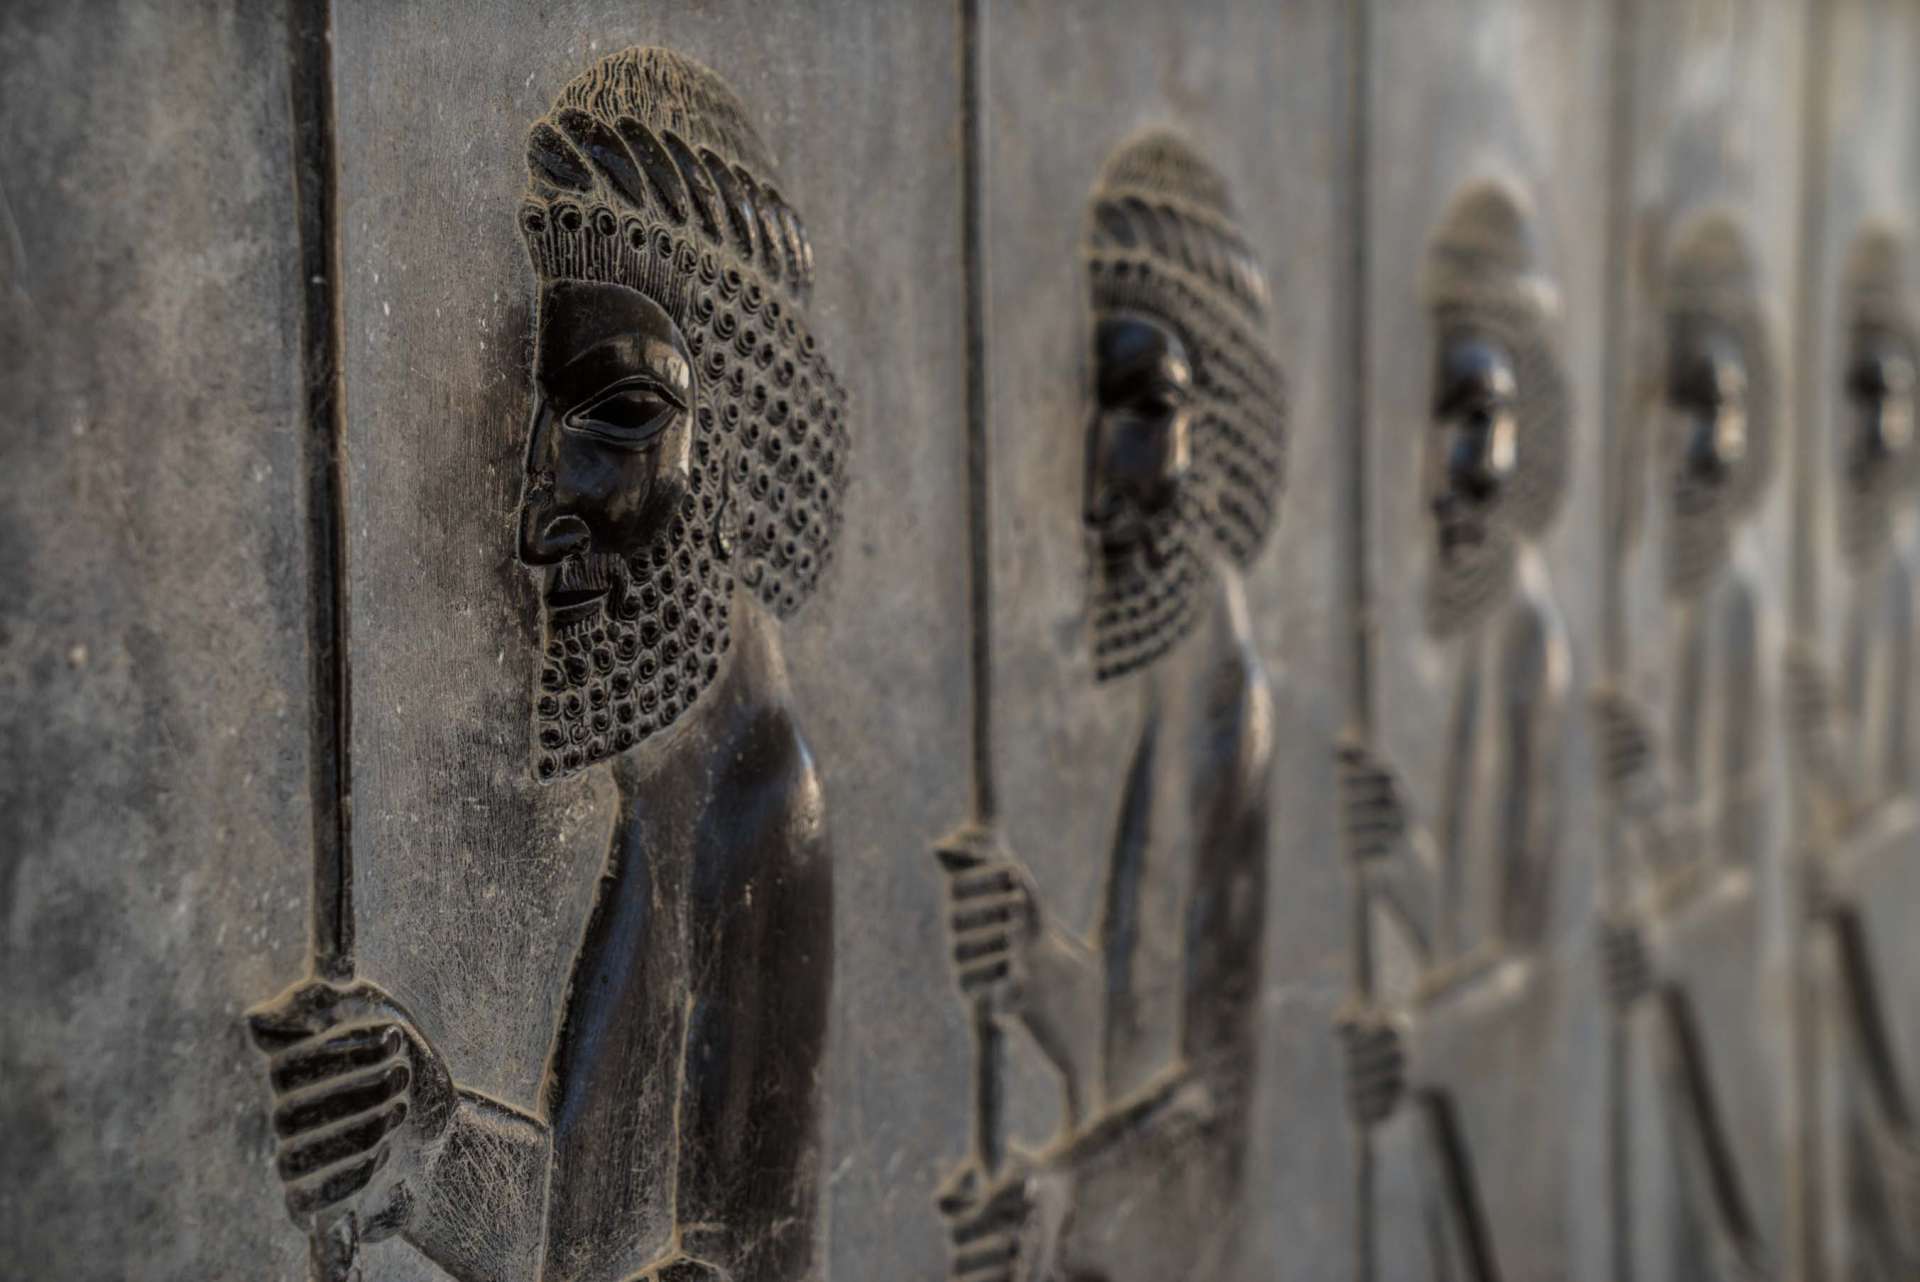 Persepolis Iran - Immortals warriors